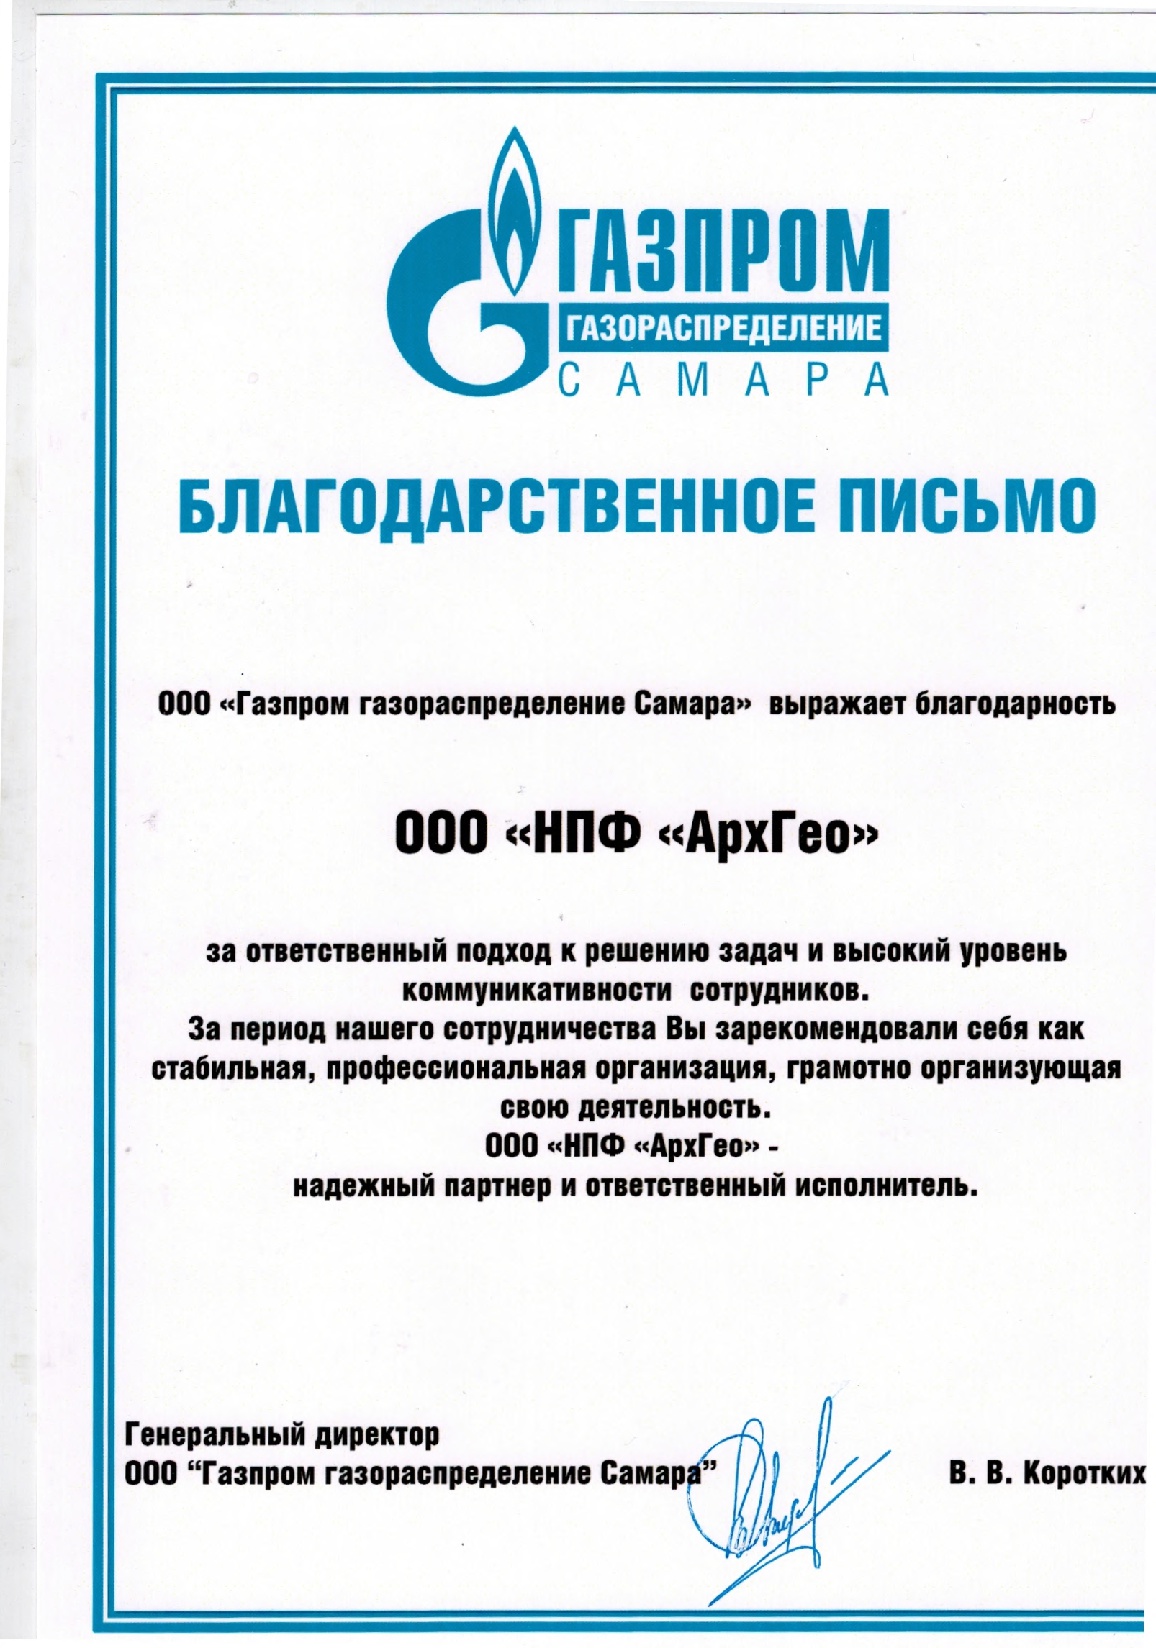 Благодарственное письмо Газпром